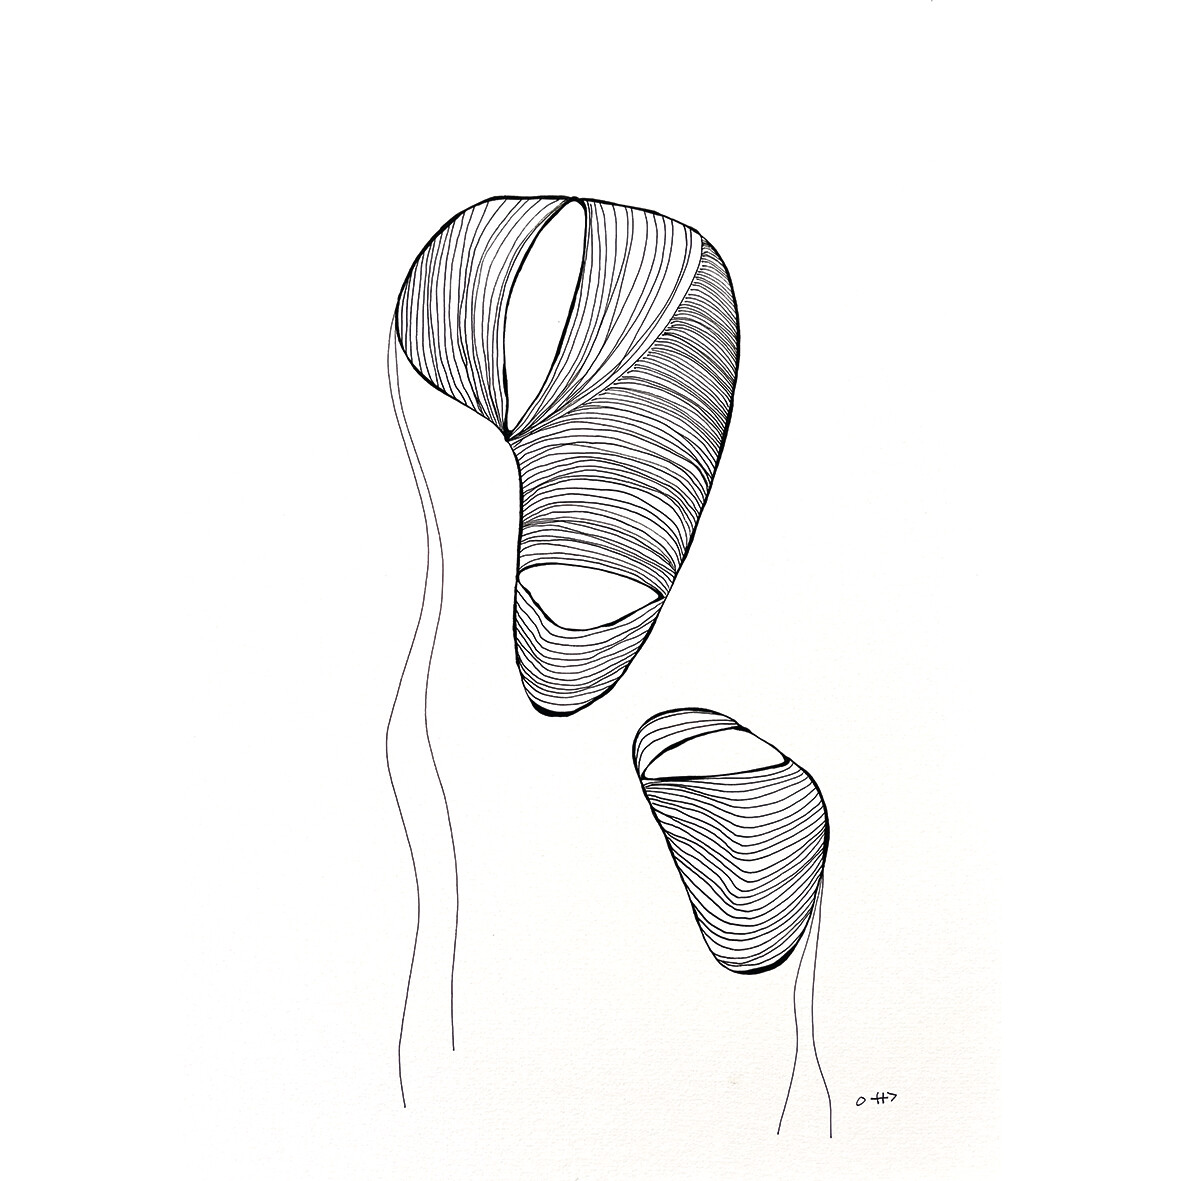 Sillyfish - Pentekening uit de serie "Inner Strength"